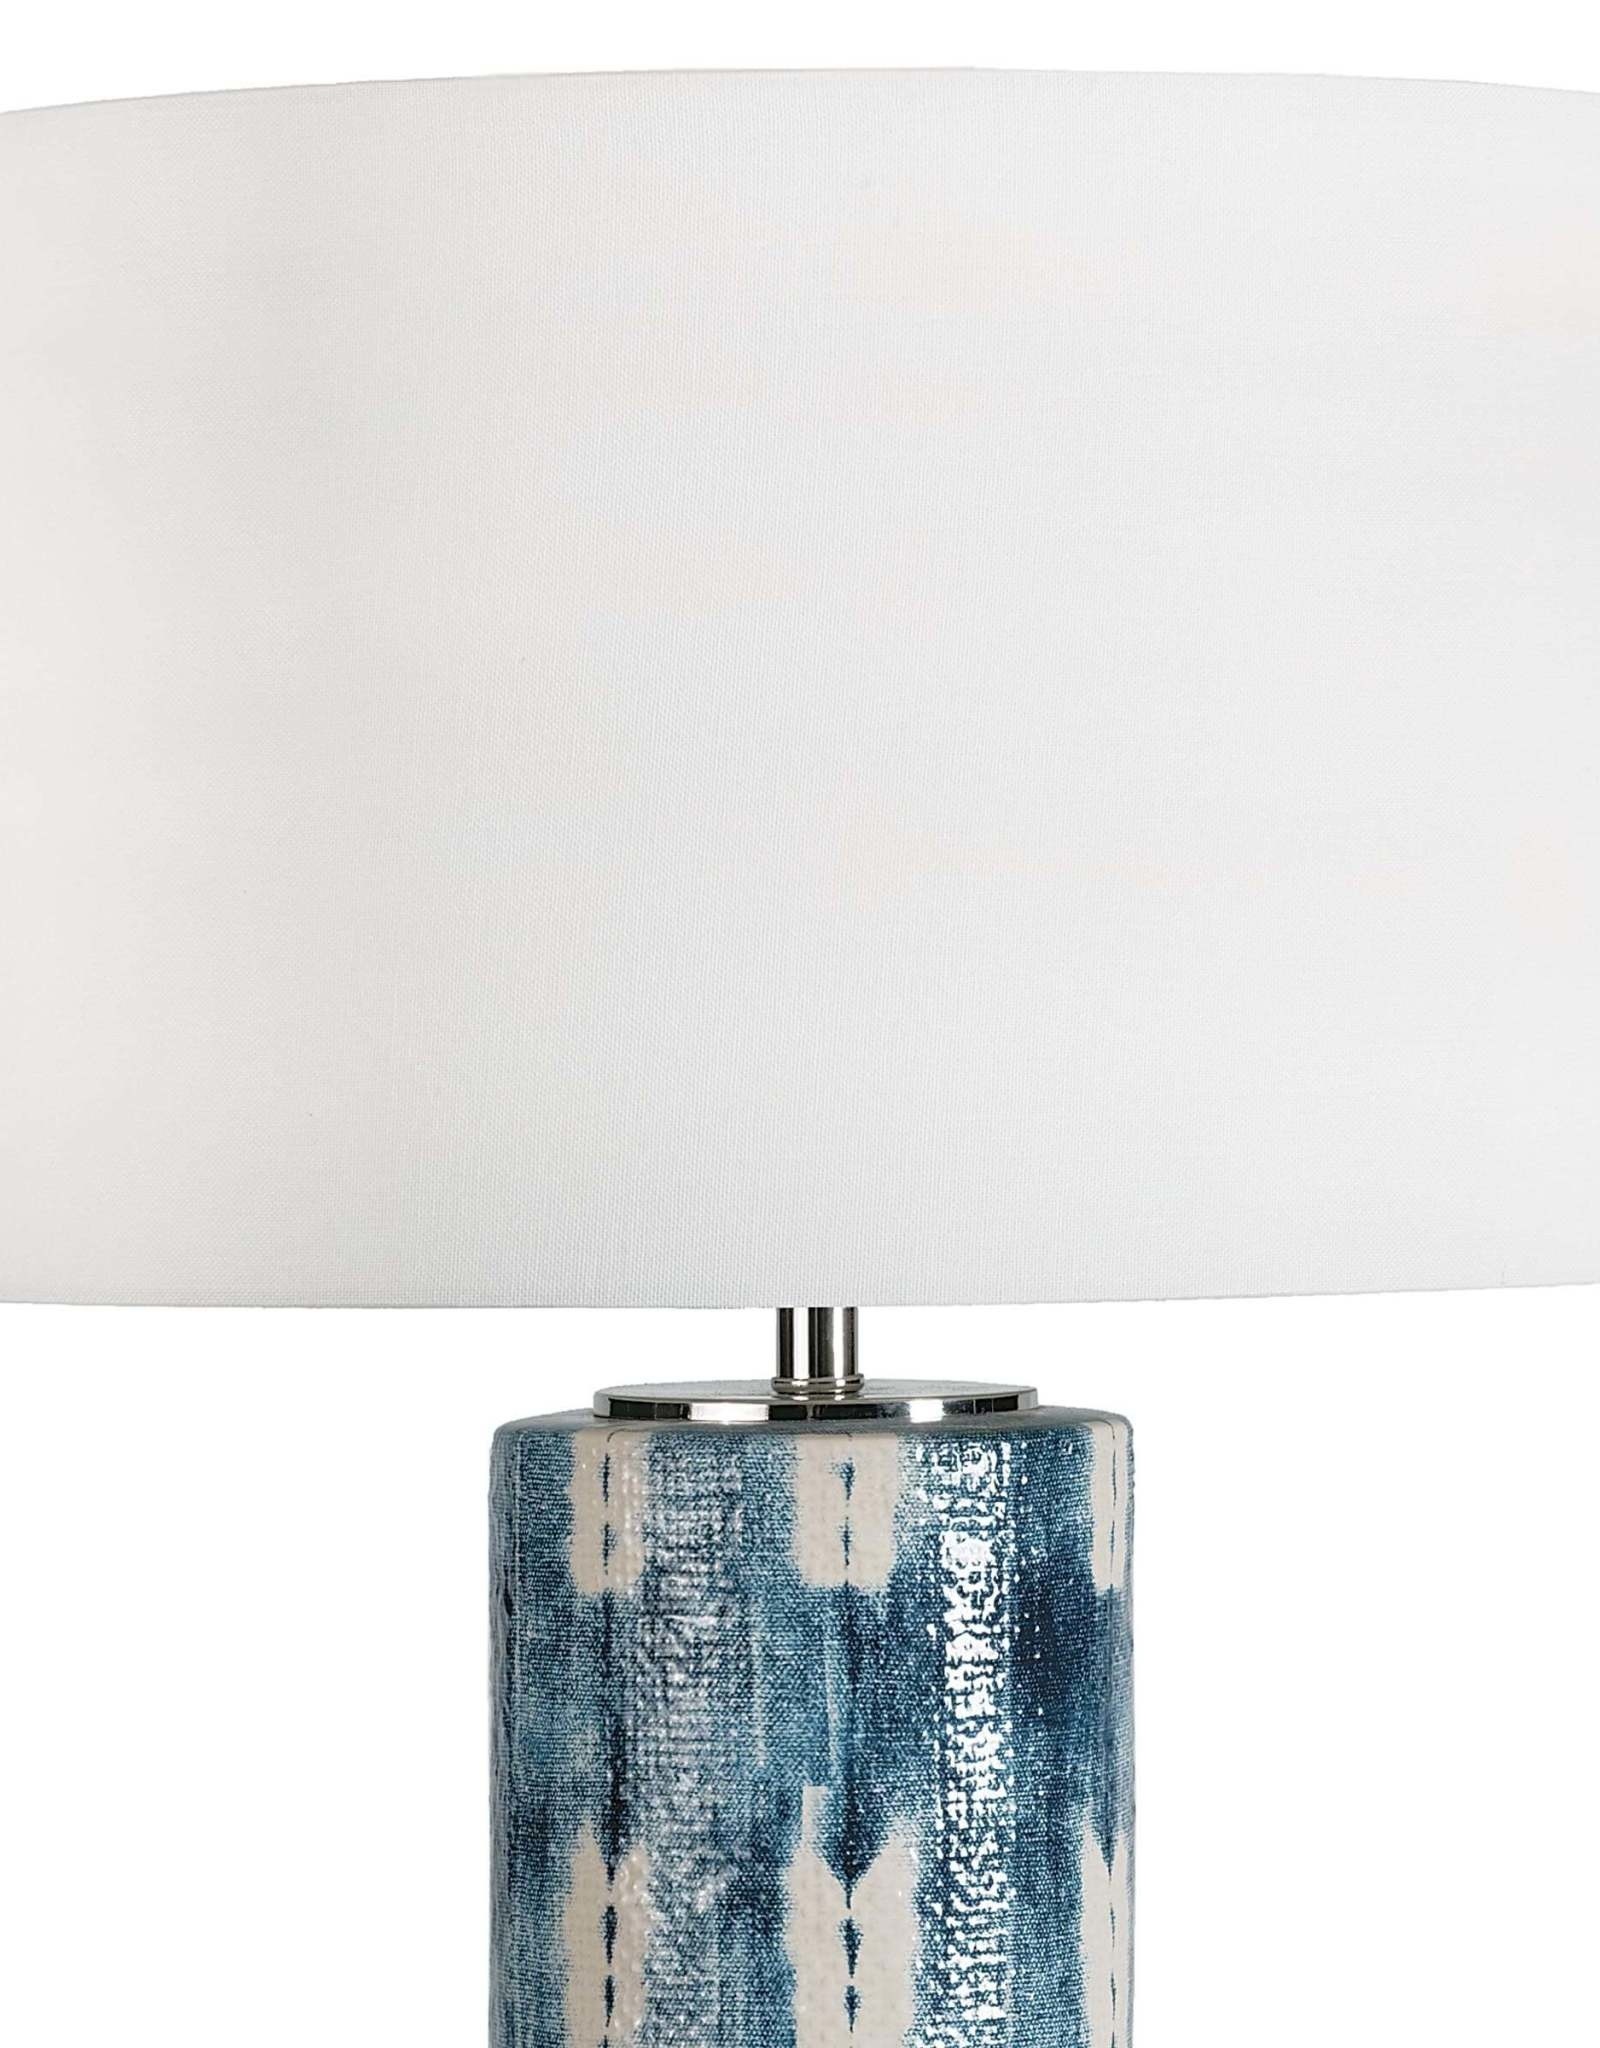 Regina Andrew Design Mali Ceramic Table Lamp